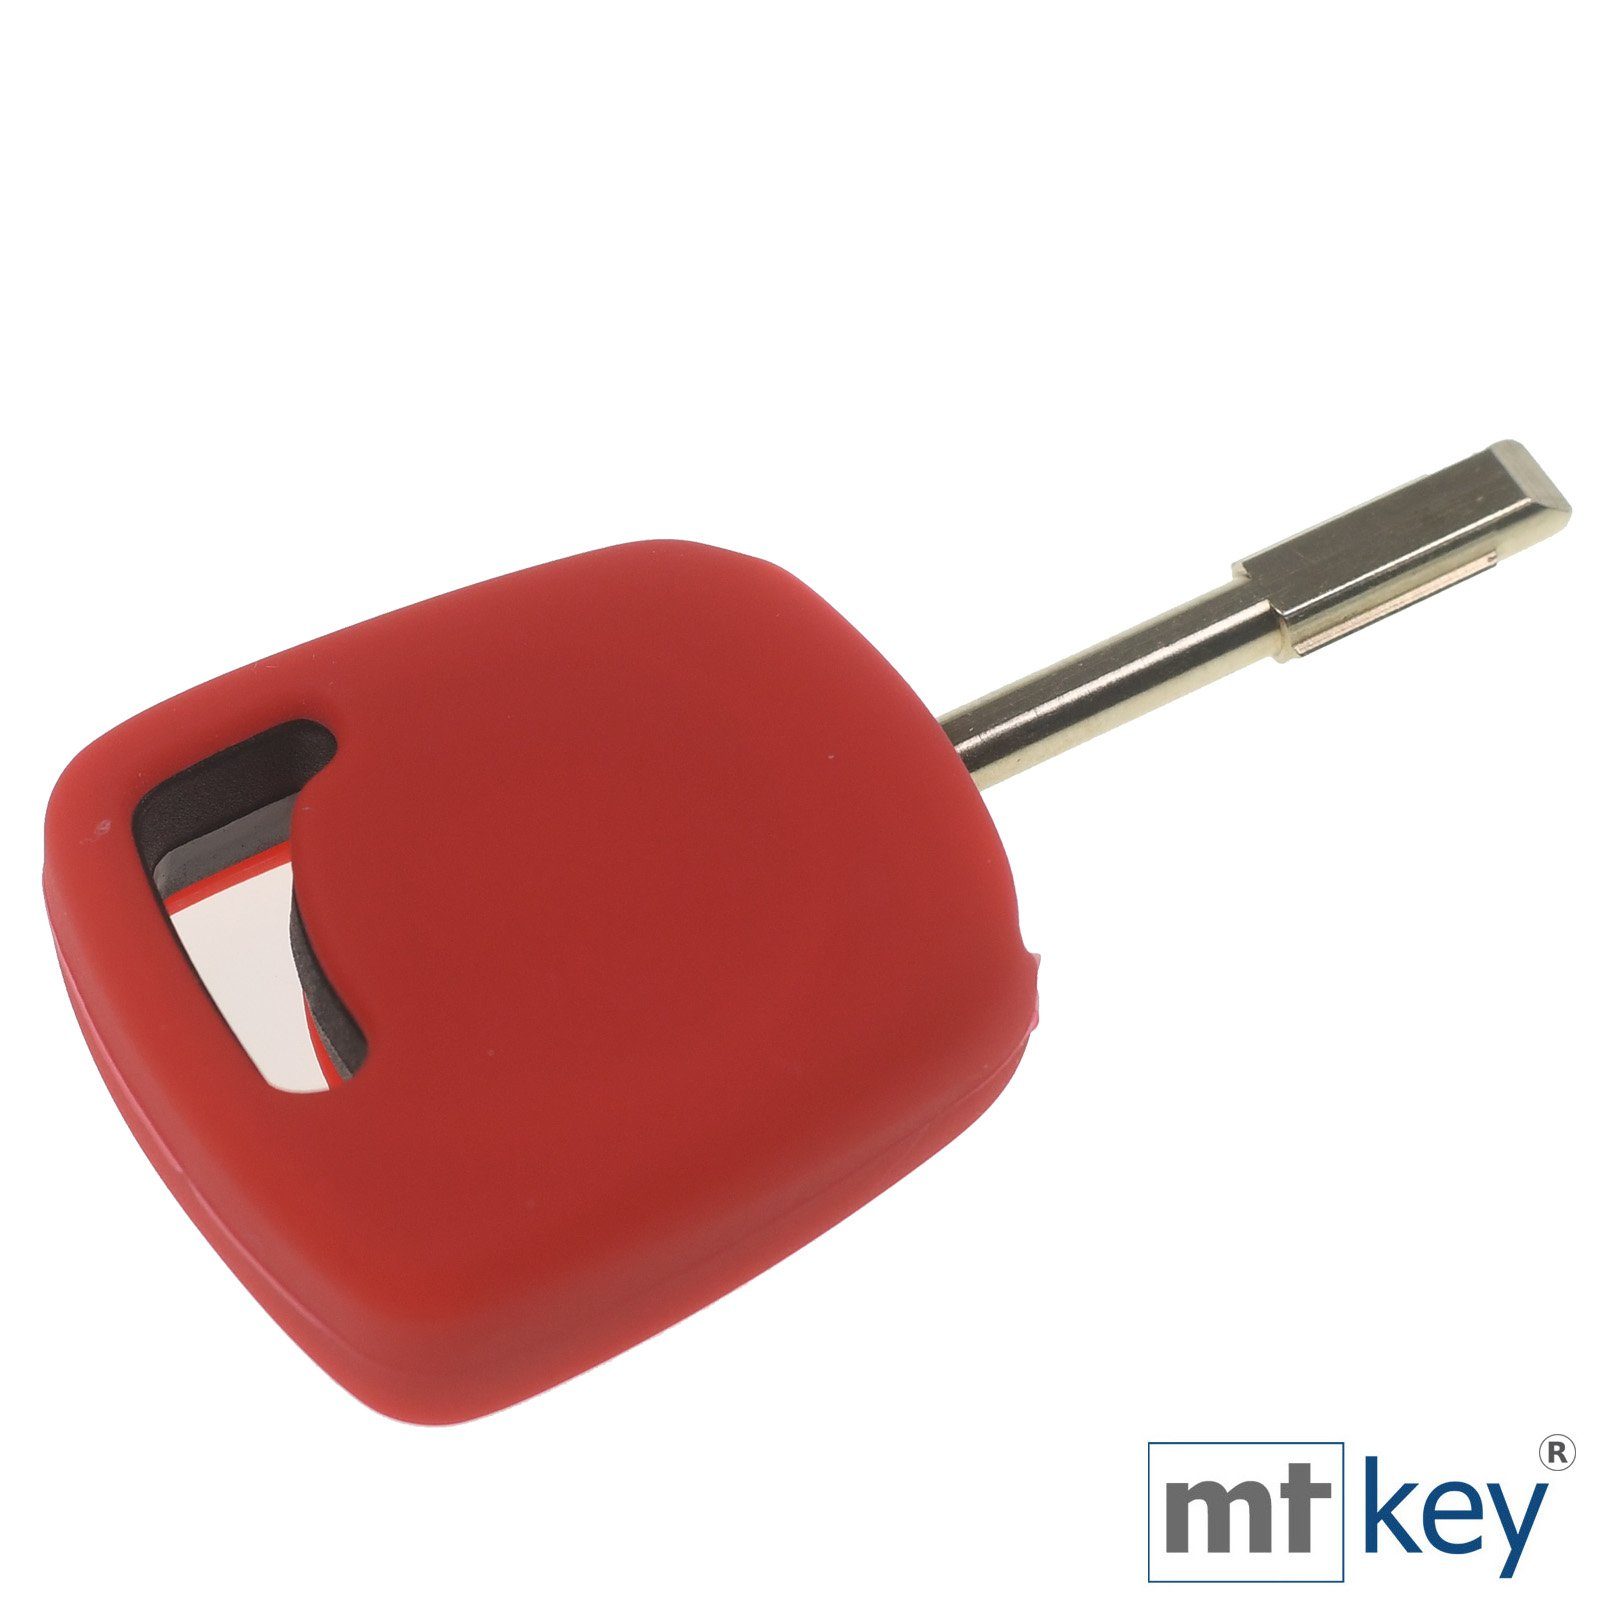 Autoschlüssel Startschlüssel Schutzhülle Ford Rot, Escort Mondeo mt-key Softcase Silikon Schlüsseltasche Transit Focus KA für Tourneo Fiesta